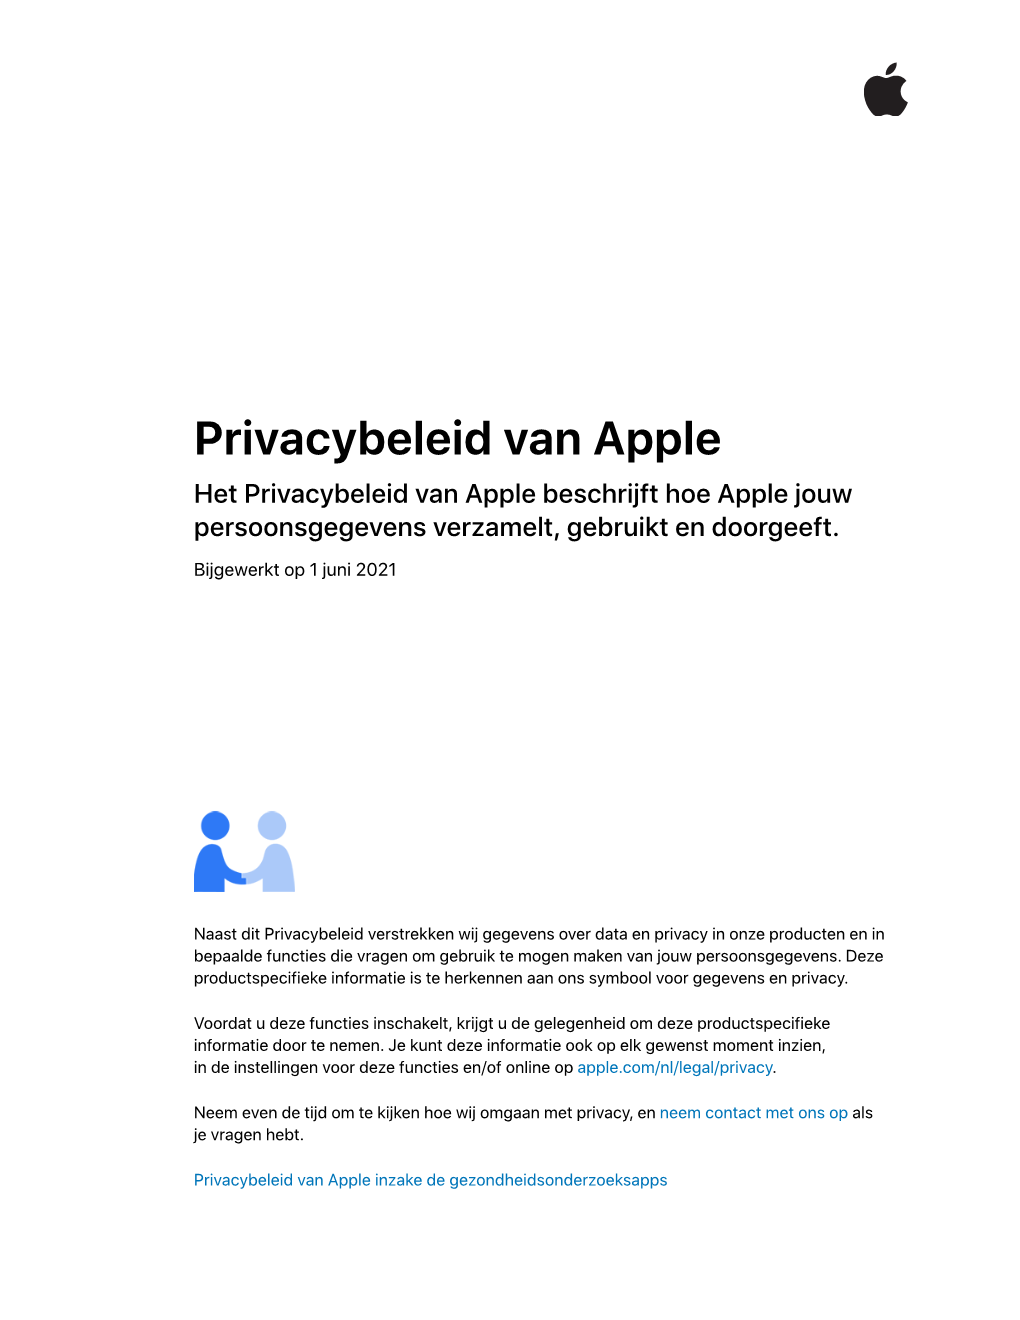 Privacybeleid Van Apple Het Privacybeleid Van Apple Beschrijft Hoe Apple Jouw Persoonsgegevens Verzamelt, Gebruikt En Doorgeeft